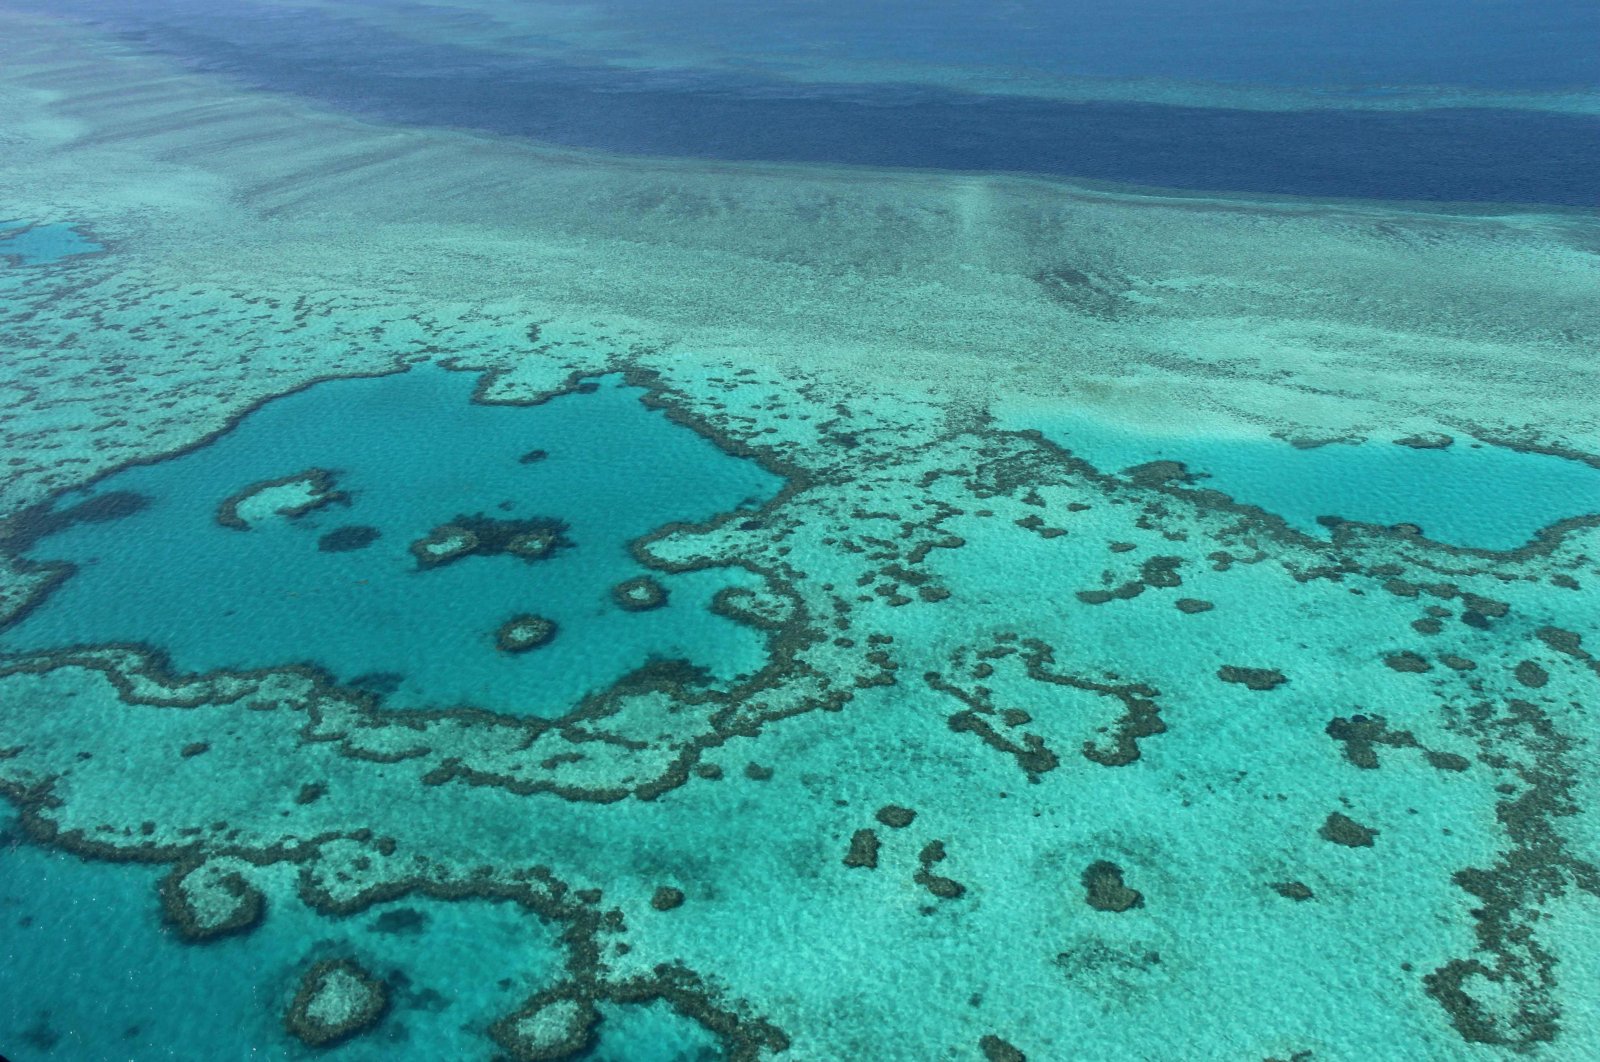 Pakar PBB merekomendasikan untuk mencantumkan Great Barrier Reef sebagai ‘dalam bahaya’